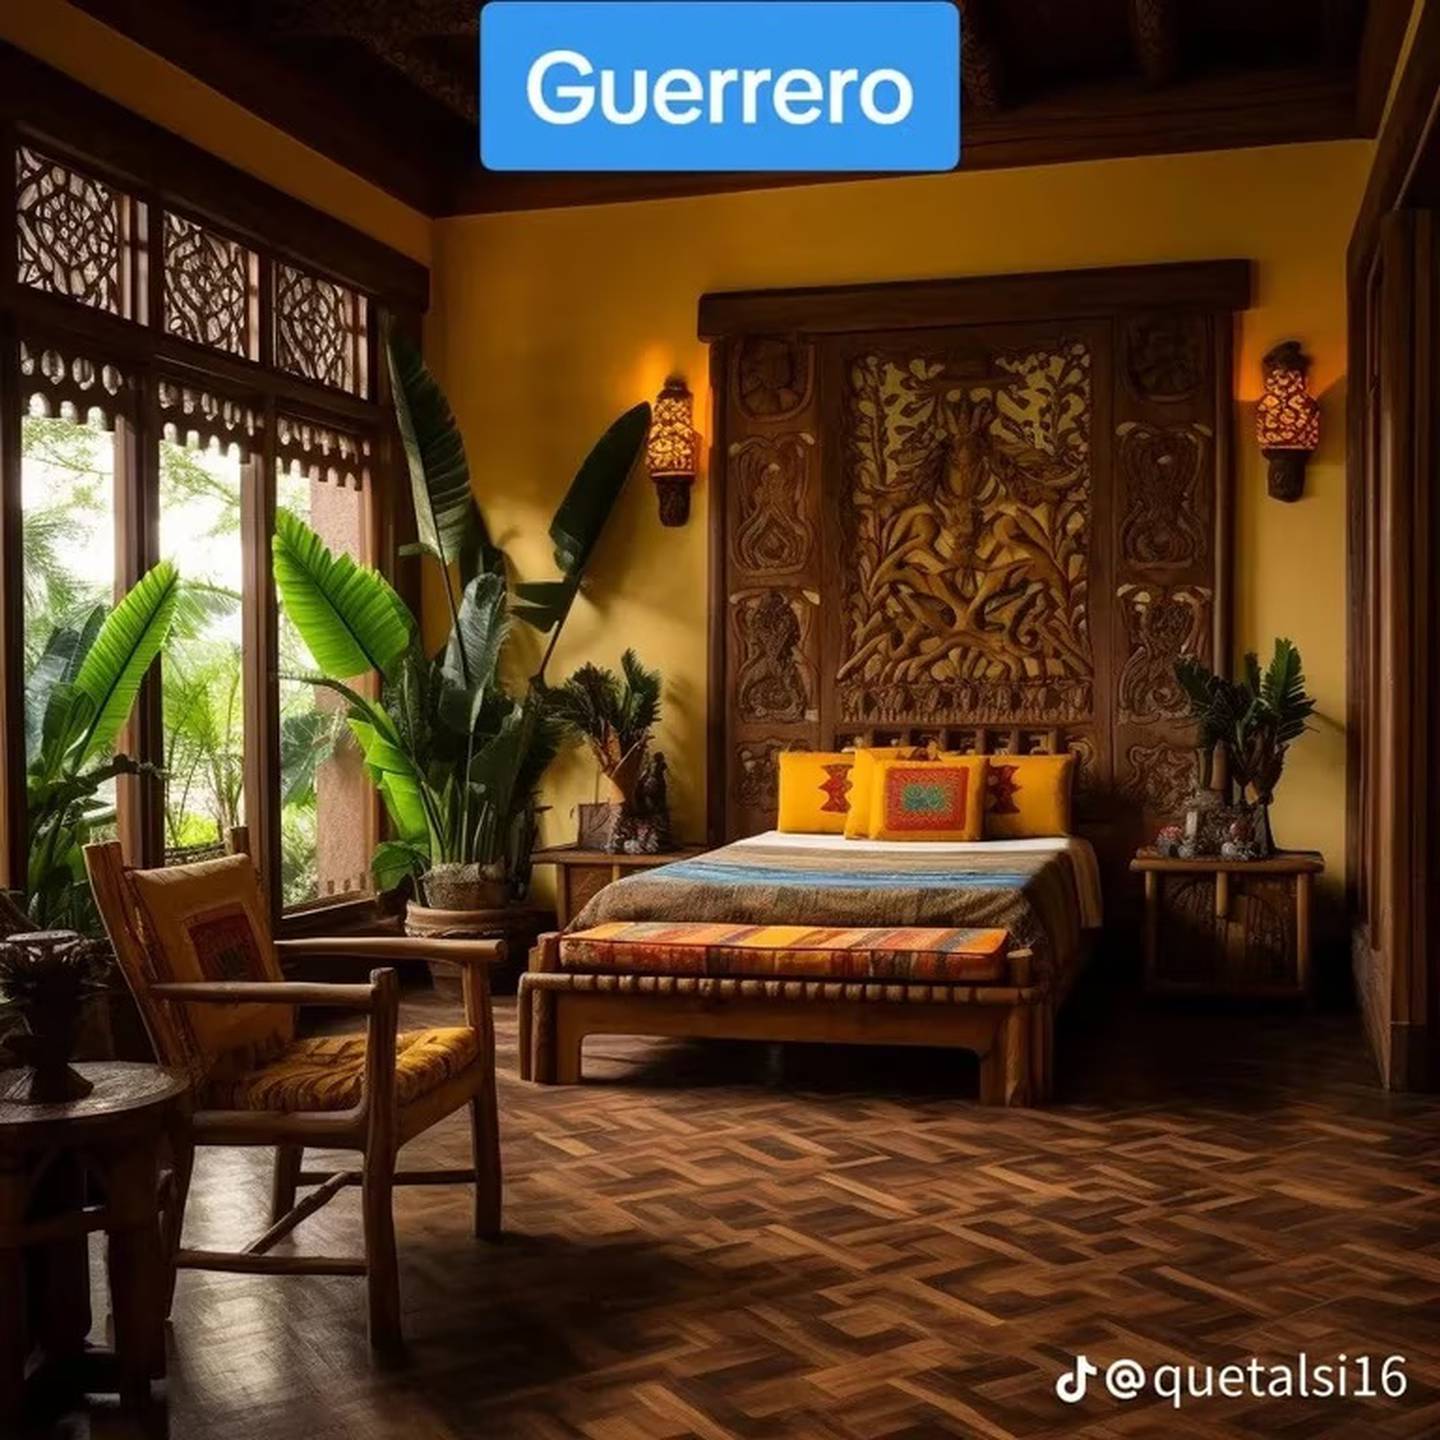 IA estados de México como habitaciones de hotel